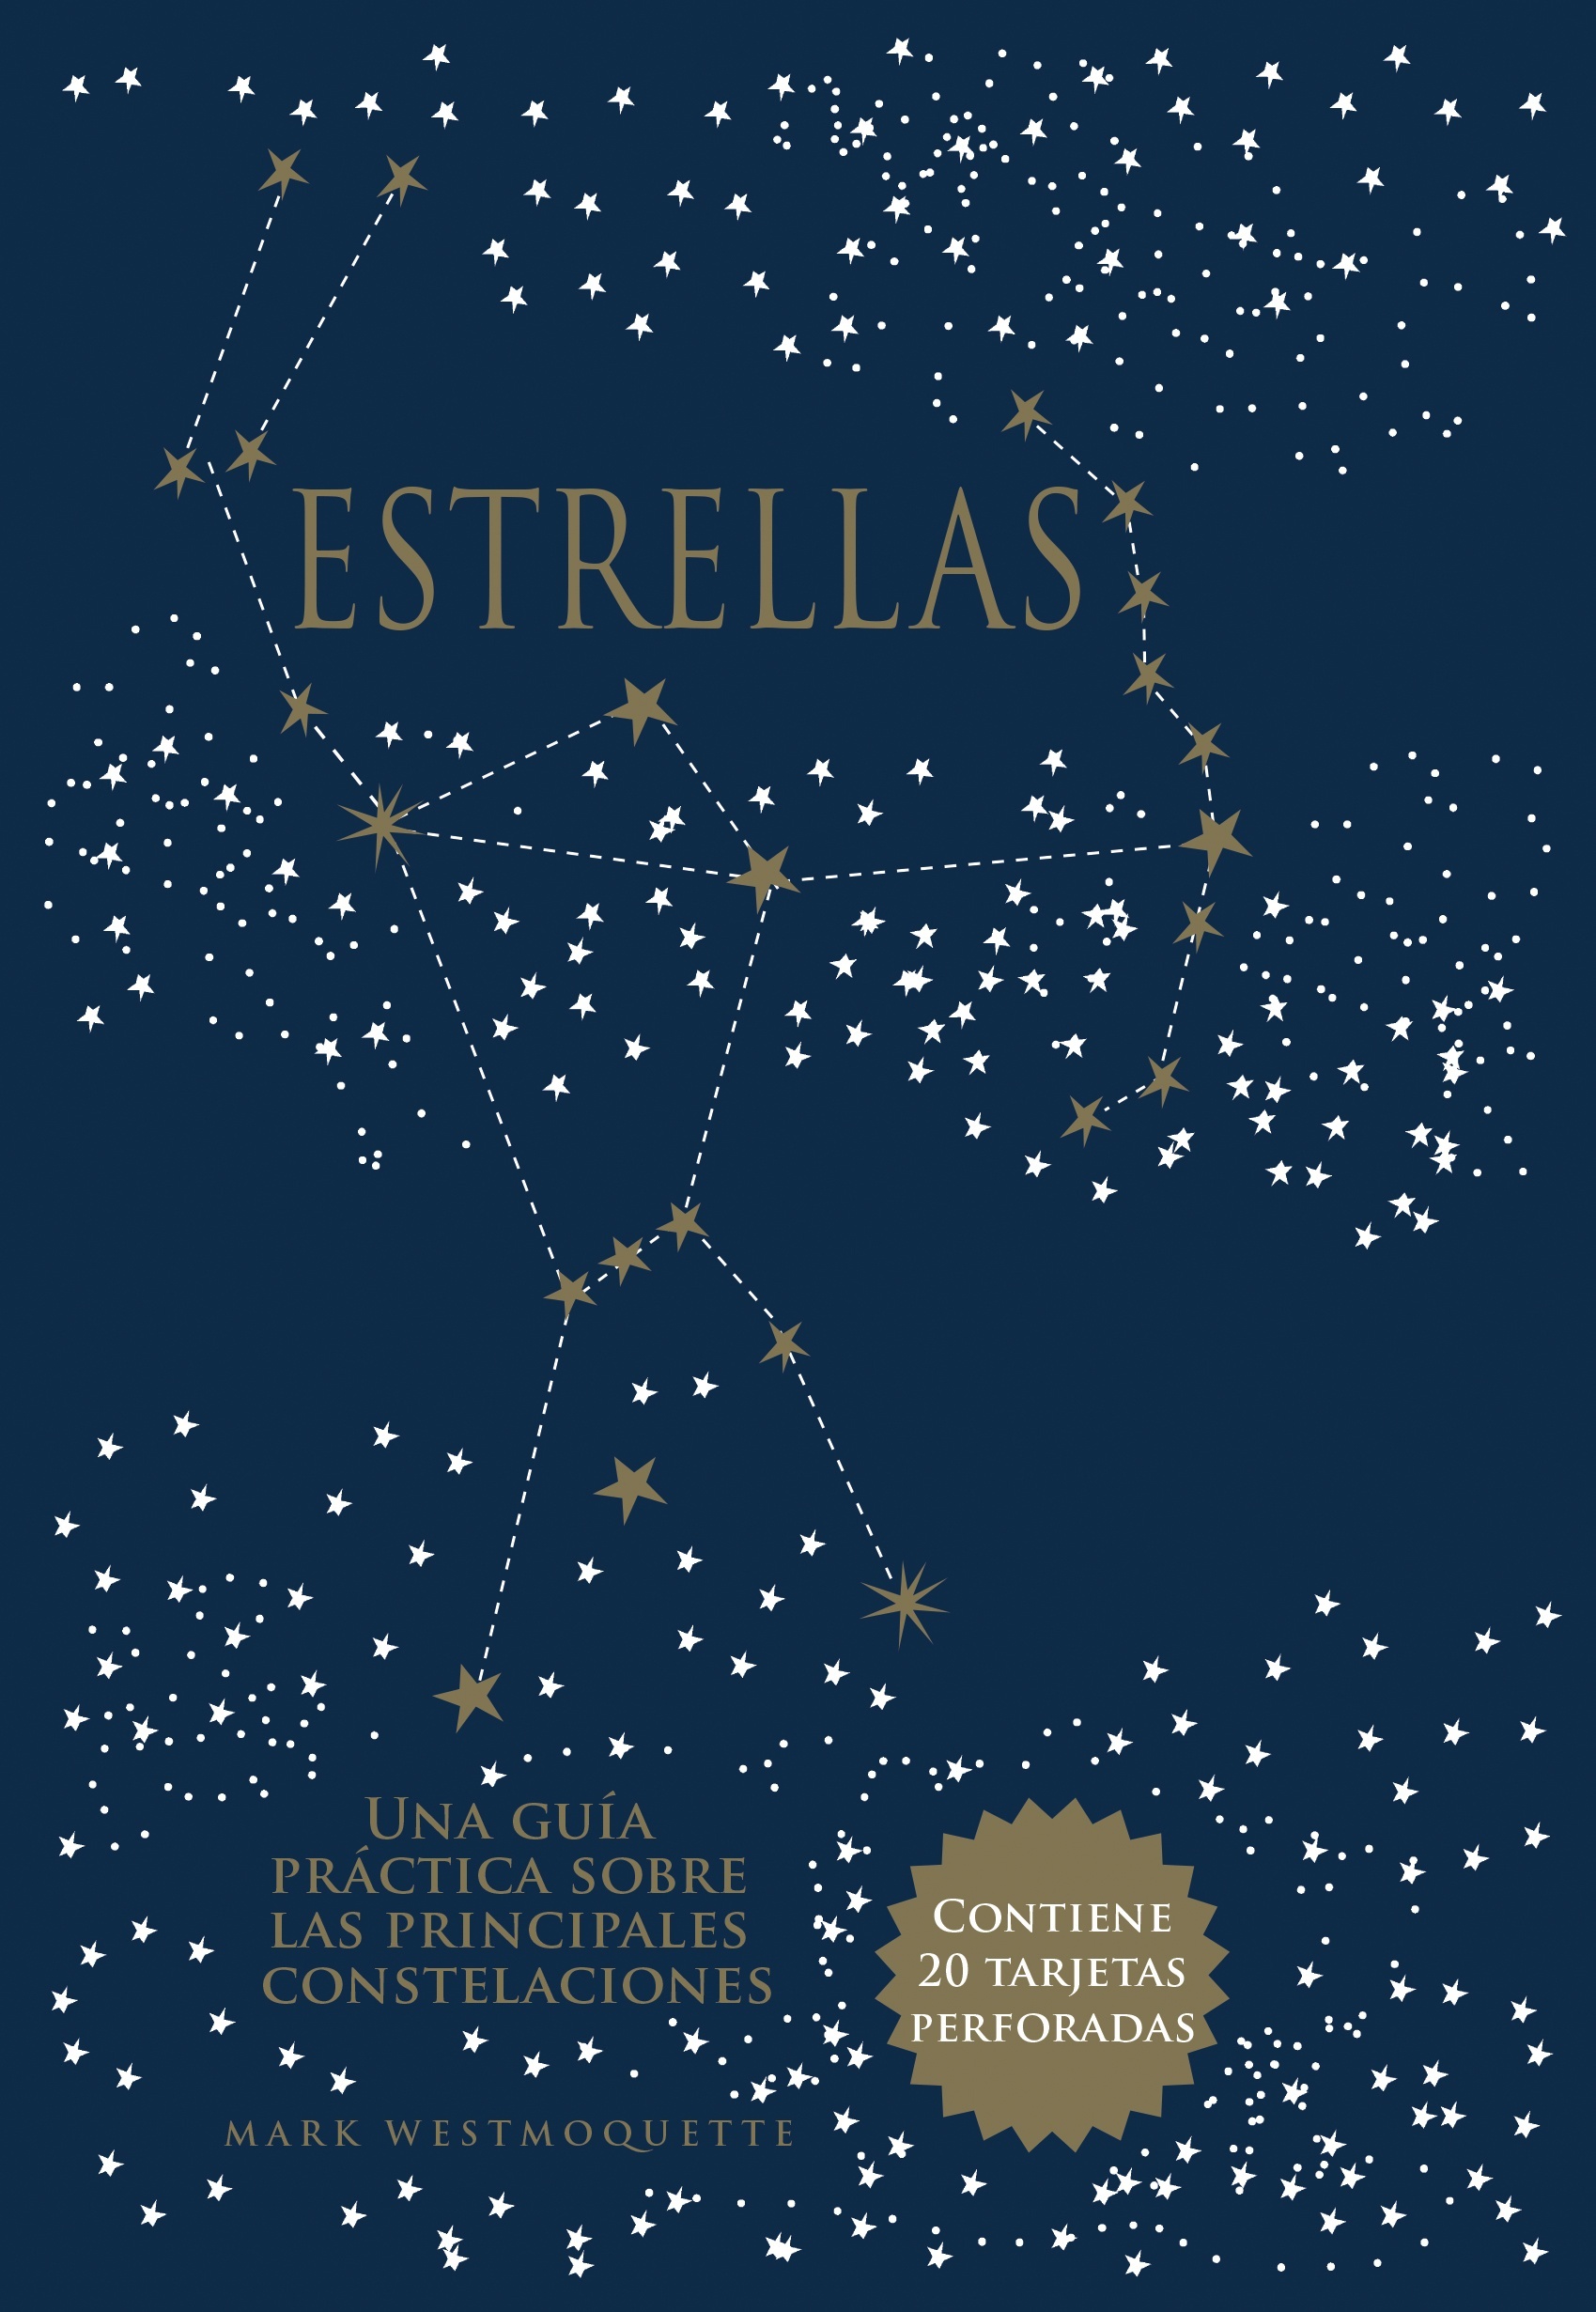 Estrellas "Una guía práctica sobre las principales constelaciones". 